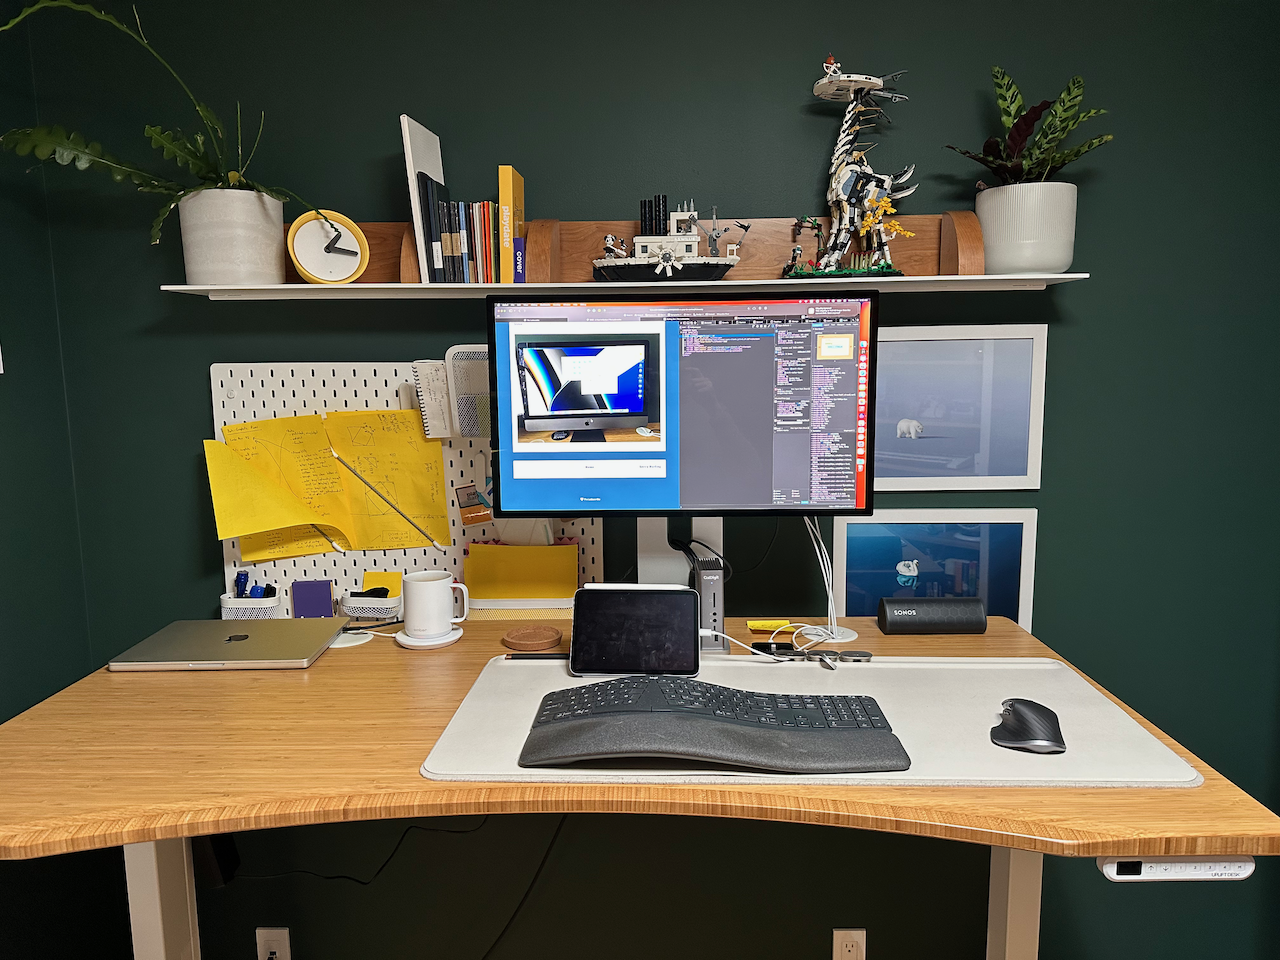 Steve's office desk setup now